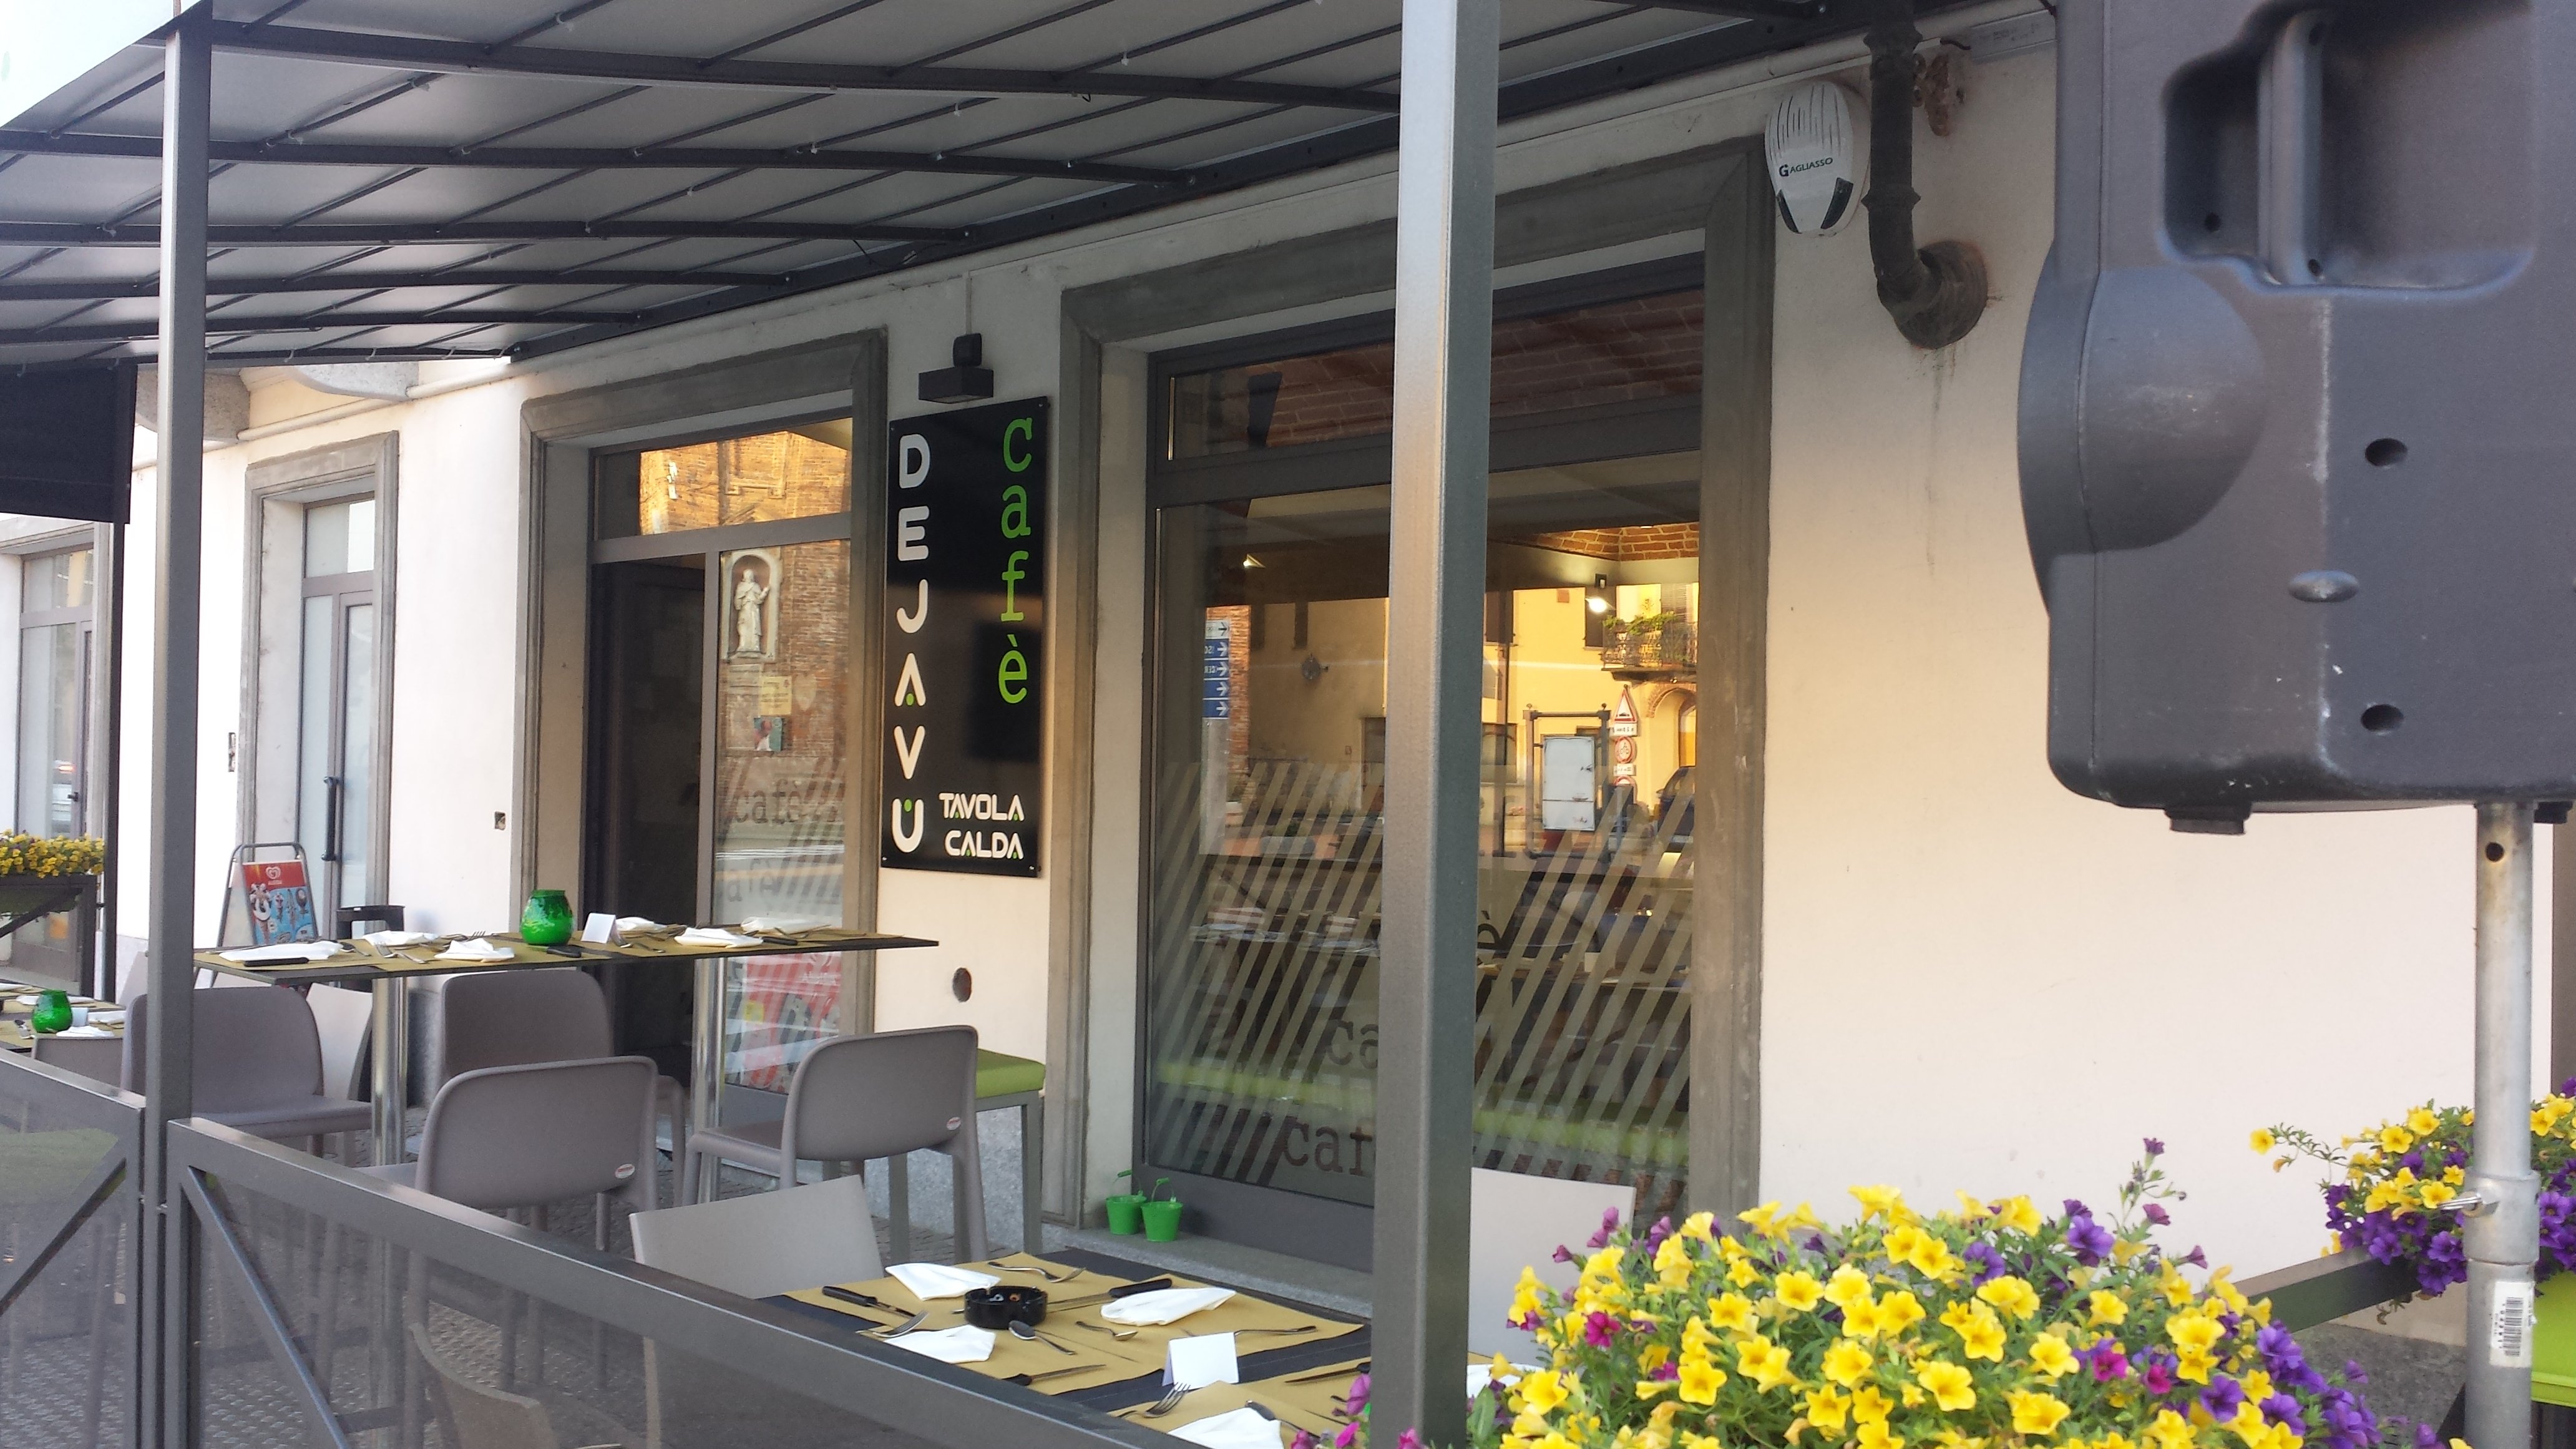 Dejavu Cafe, Caramagna Piemonte